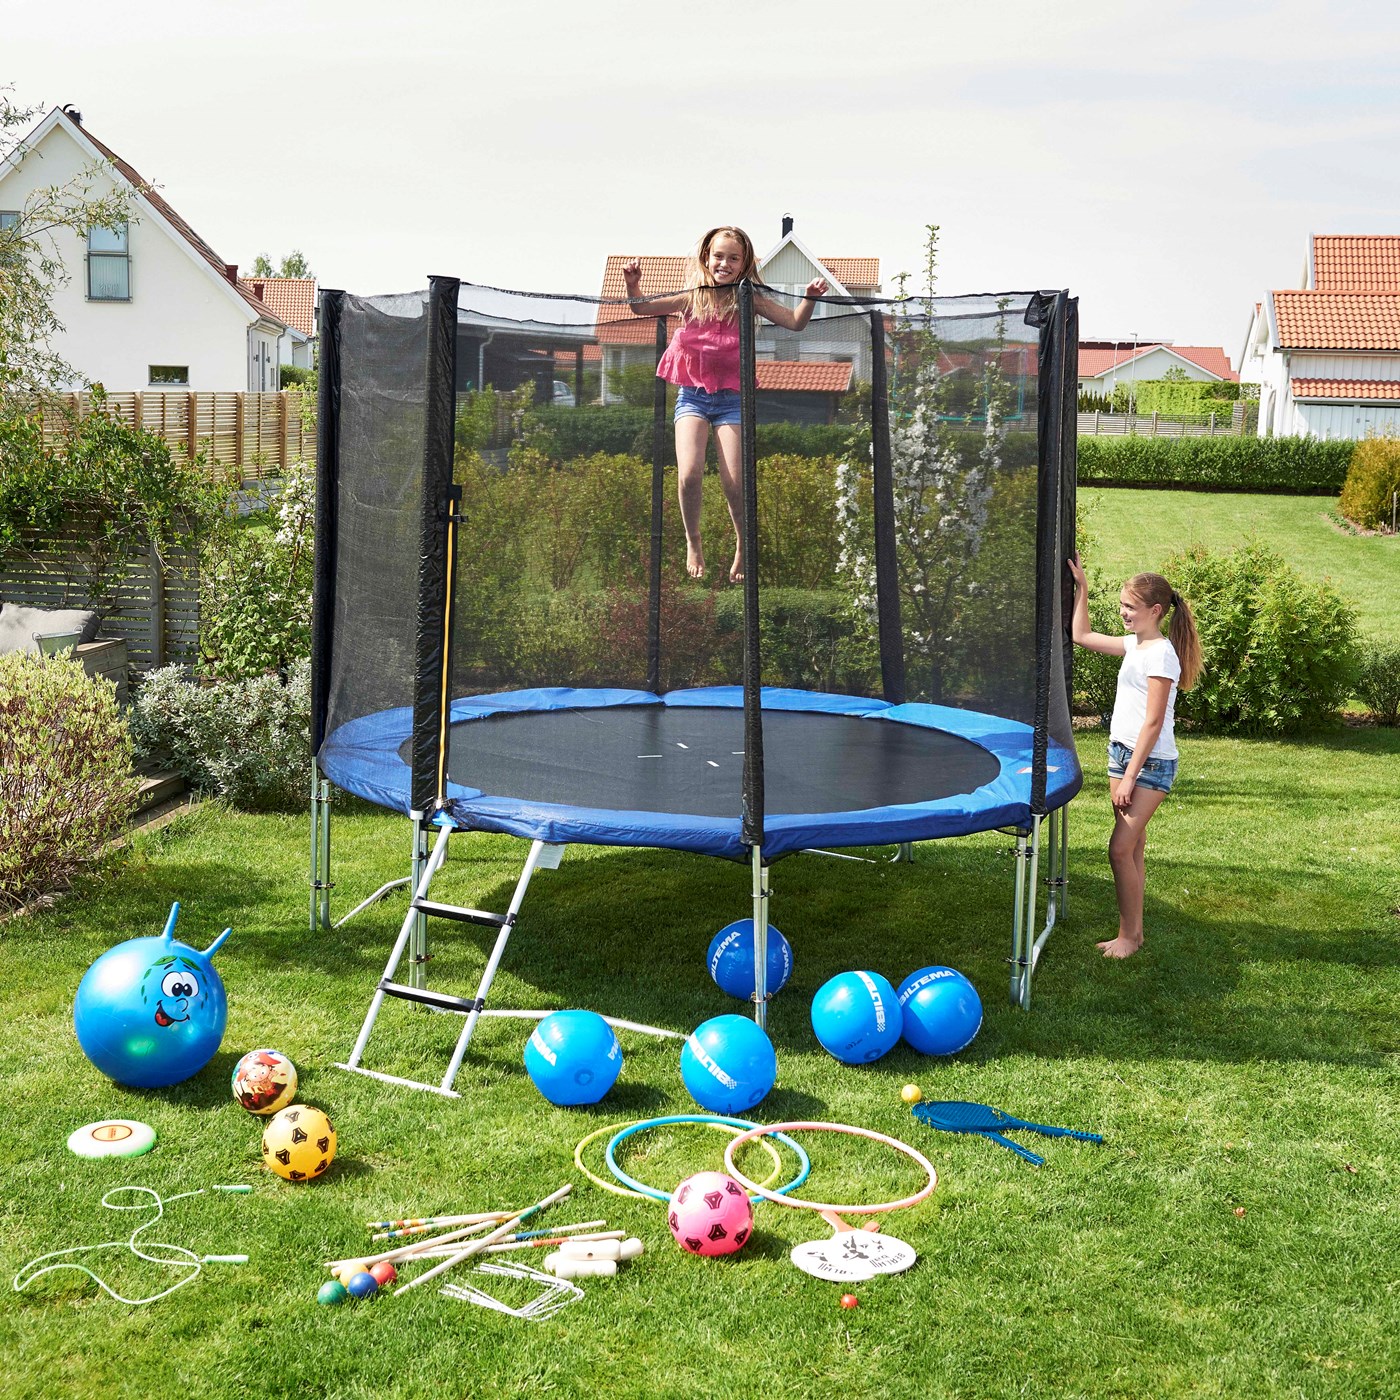 Sådan vedligeholder du din trampolin - for børnenes sikkerhed